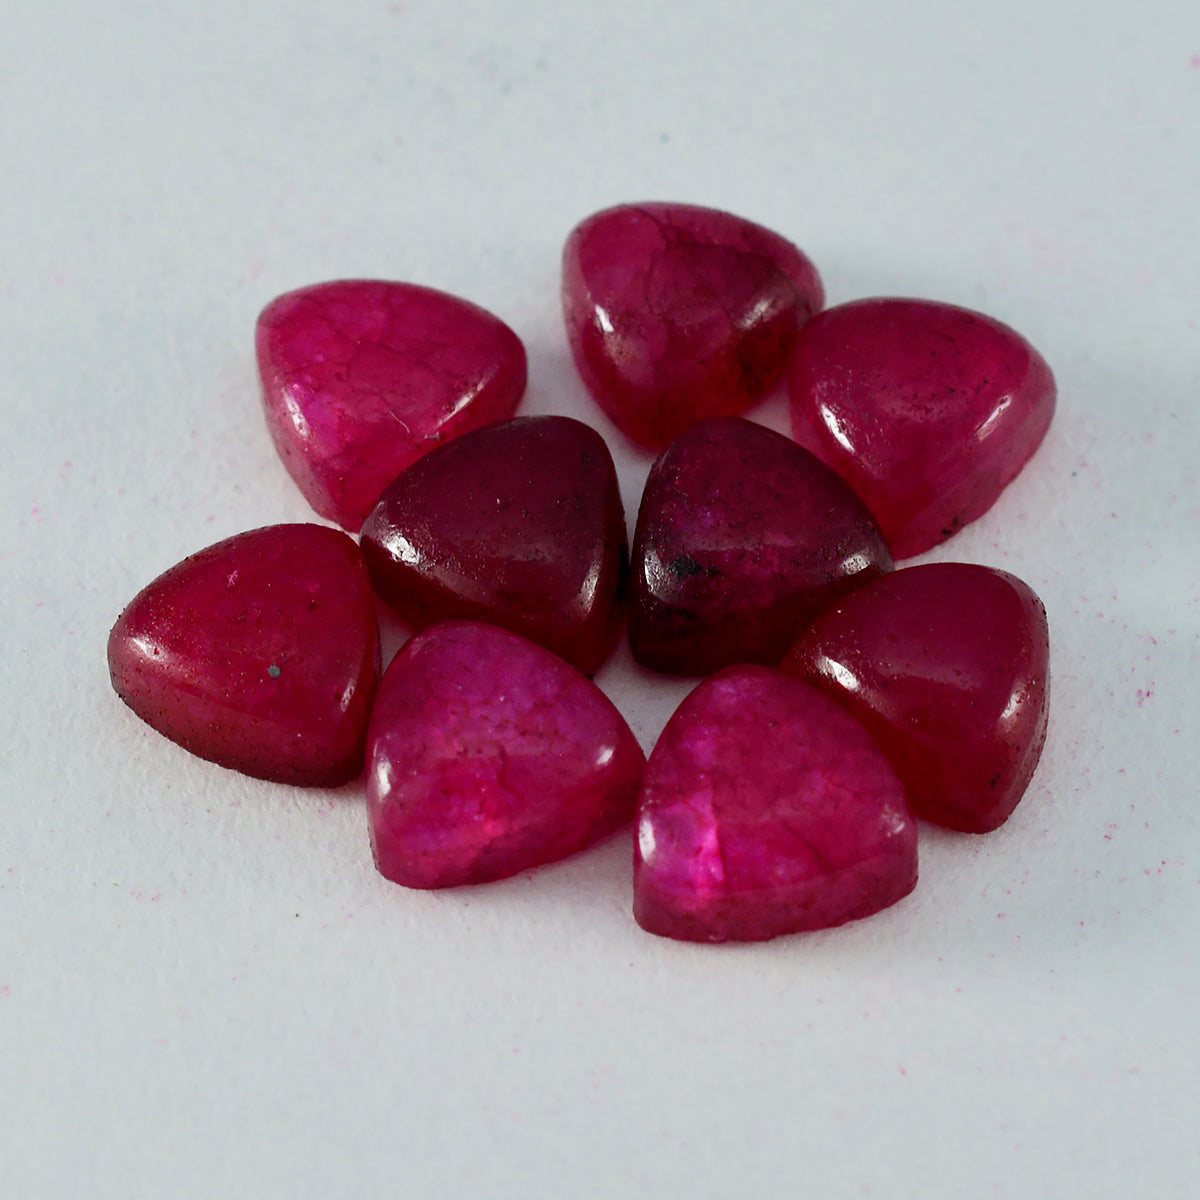 riyogems 1 шт. красная яшма кабошон 5x5 мм форма триллион красивый качественный свободный драгоценный камень